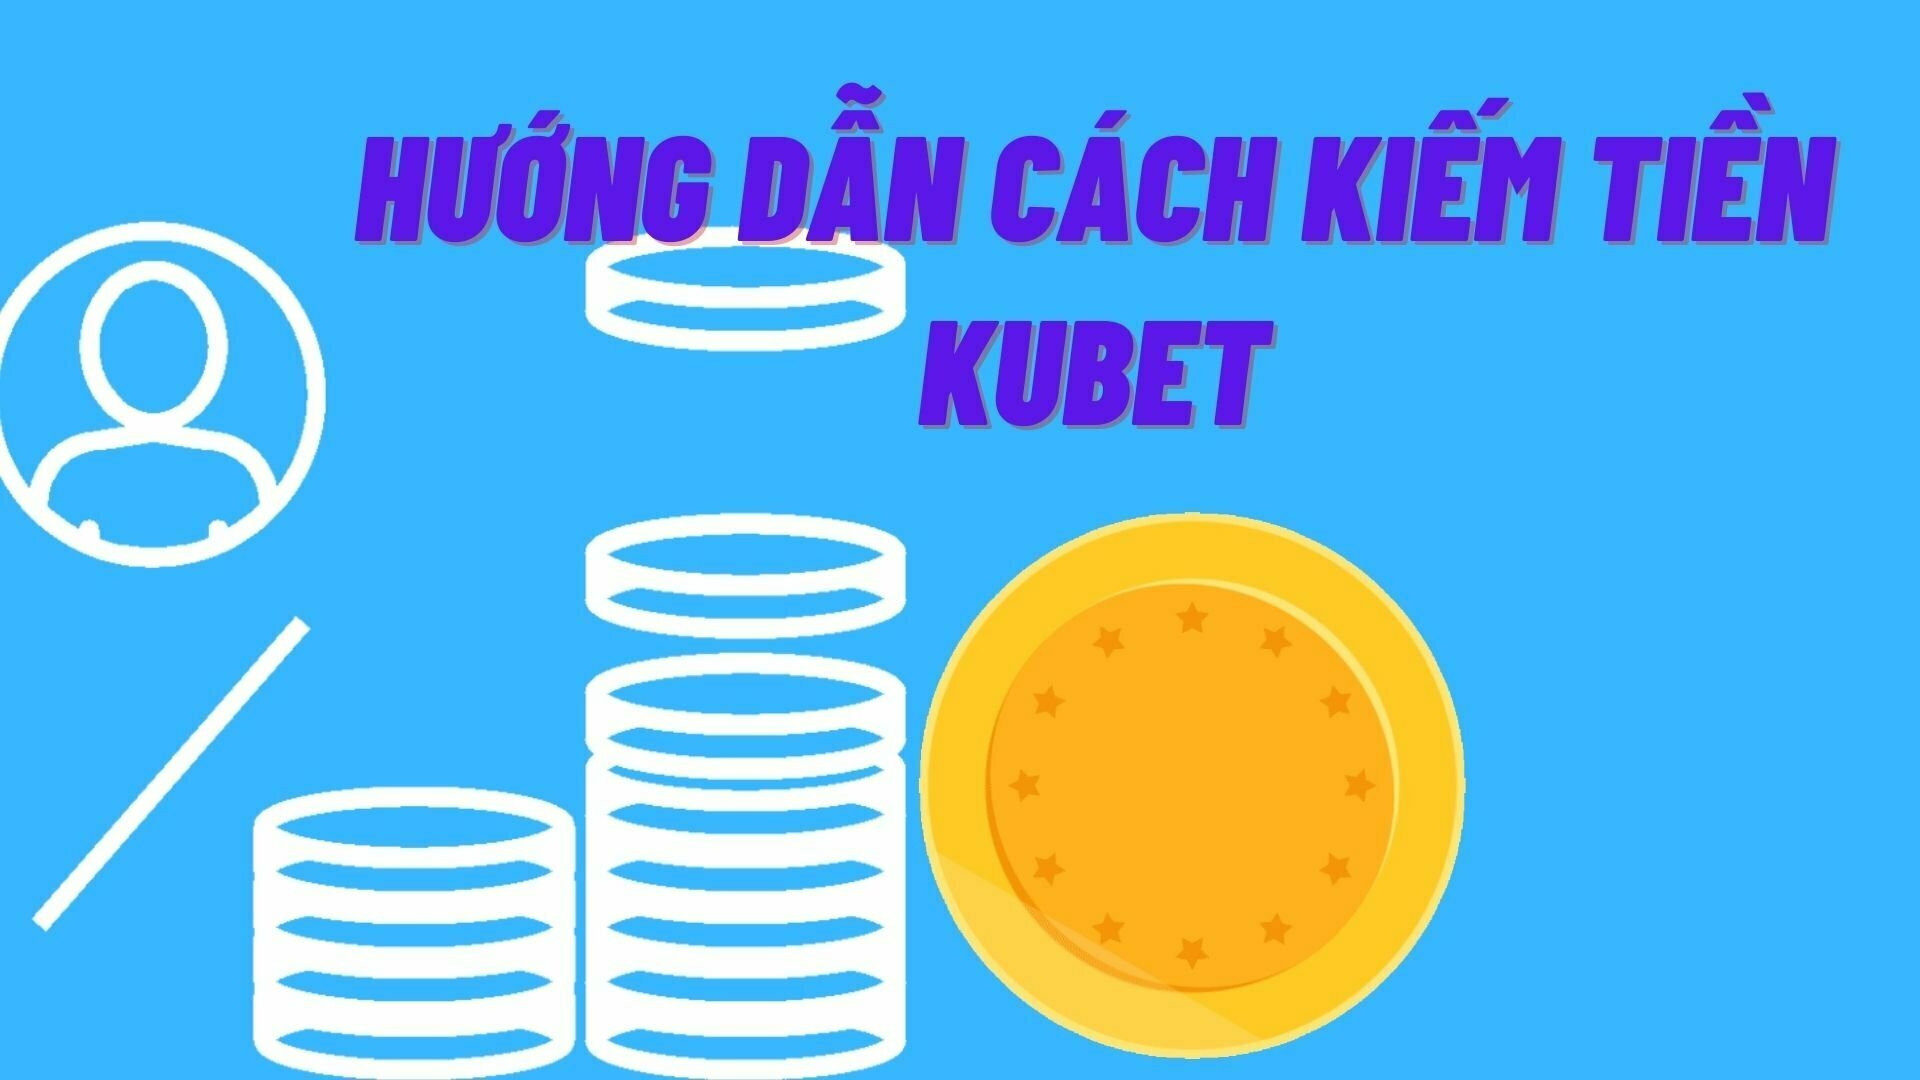 Hướng dẫn cách kiếm tiền Kubet